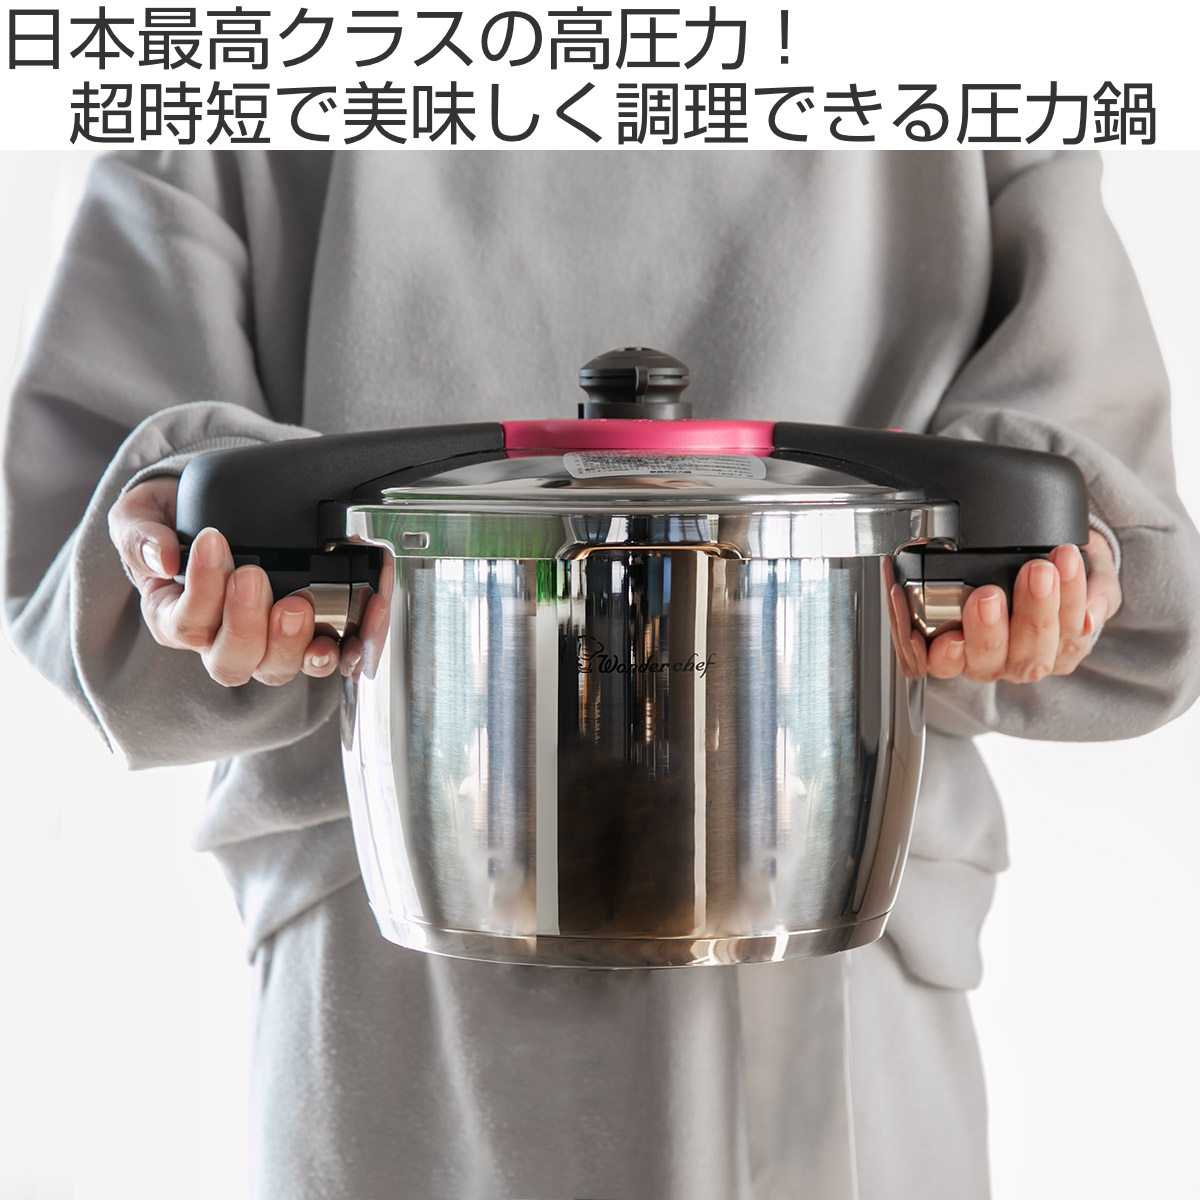 特価 圧力鍋 5.5L IH対応 魔法のクイック料理 両手鍋 レシピ付き